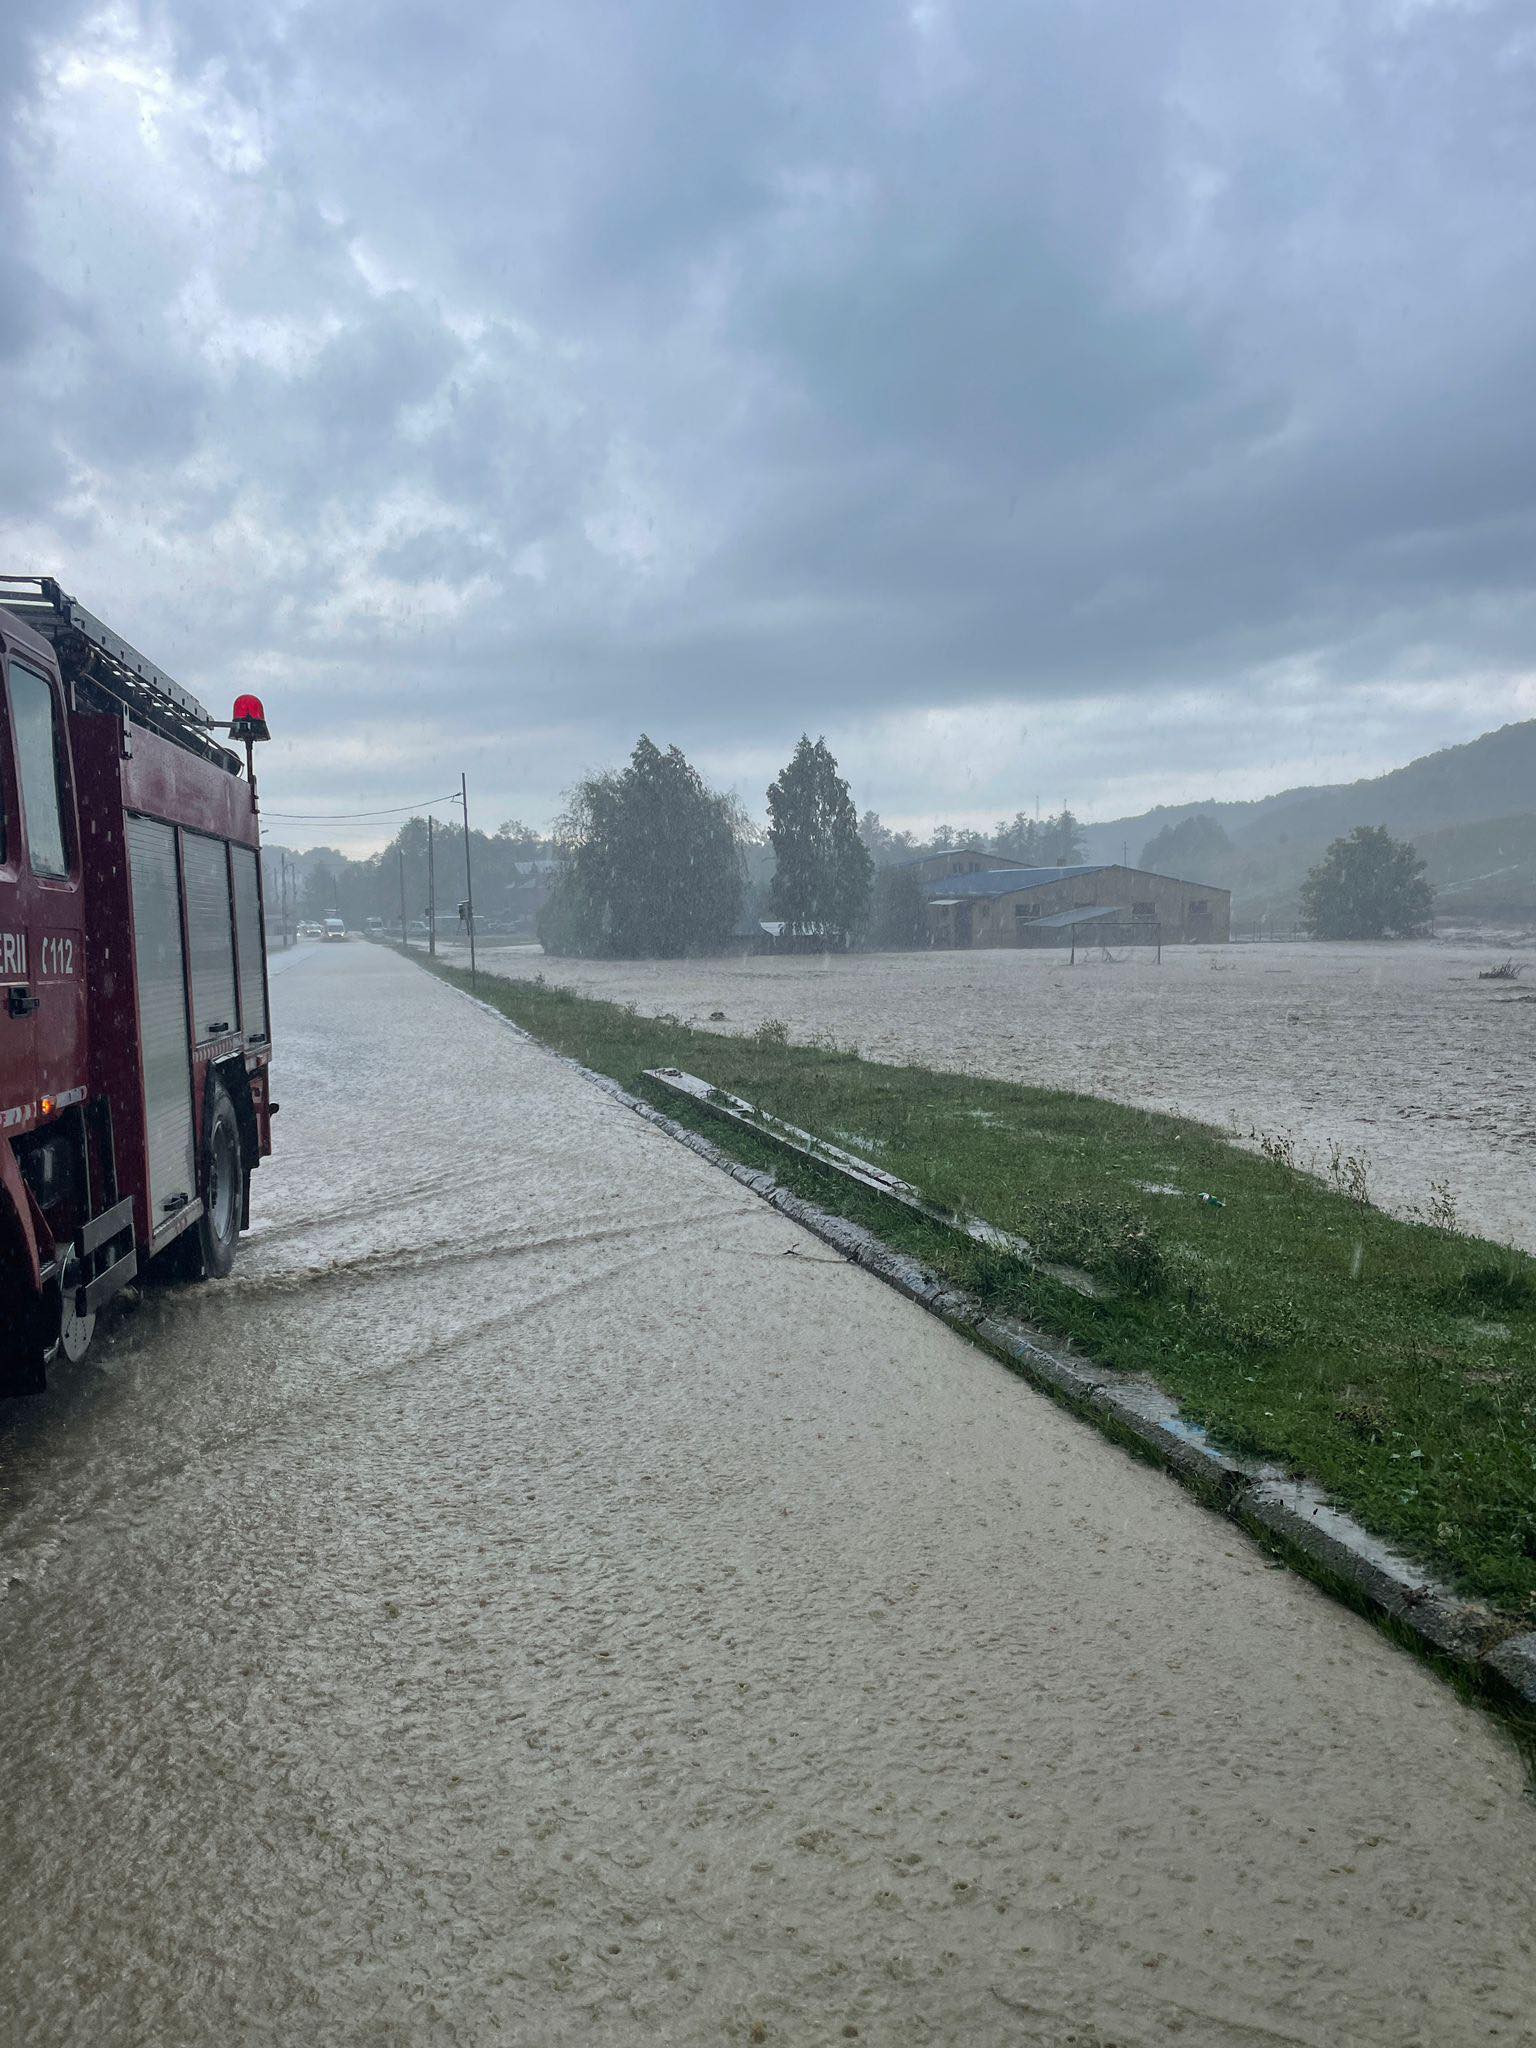 ACUM – Pârâul Ialomicioara a ieșit din matcă și a inundat drumul, ferma de cai și mai multe gospodării